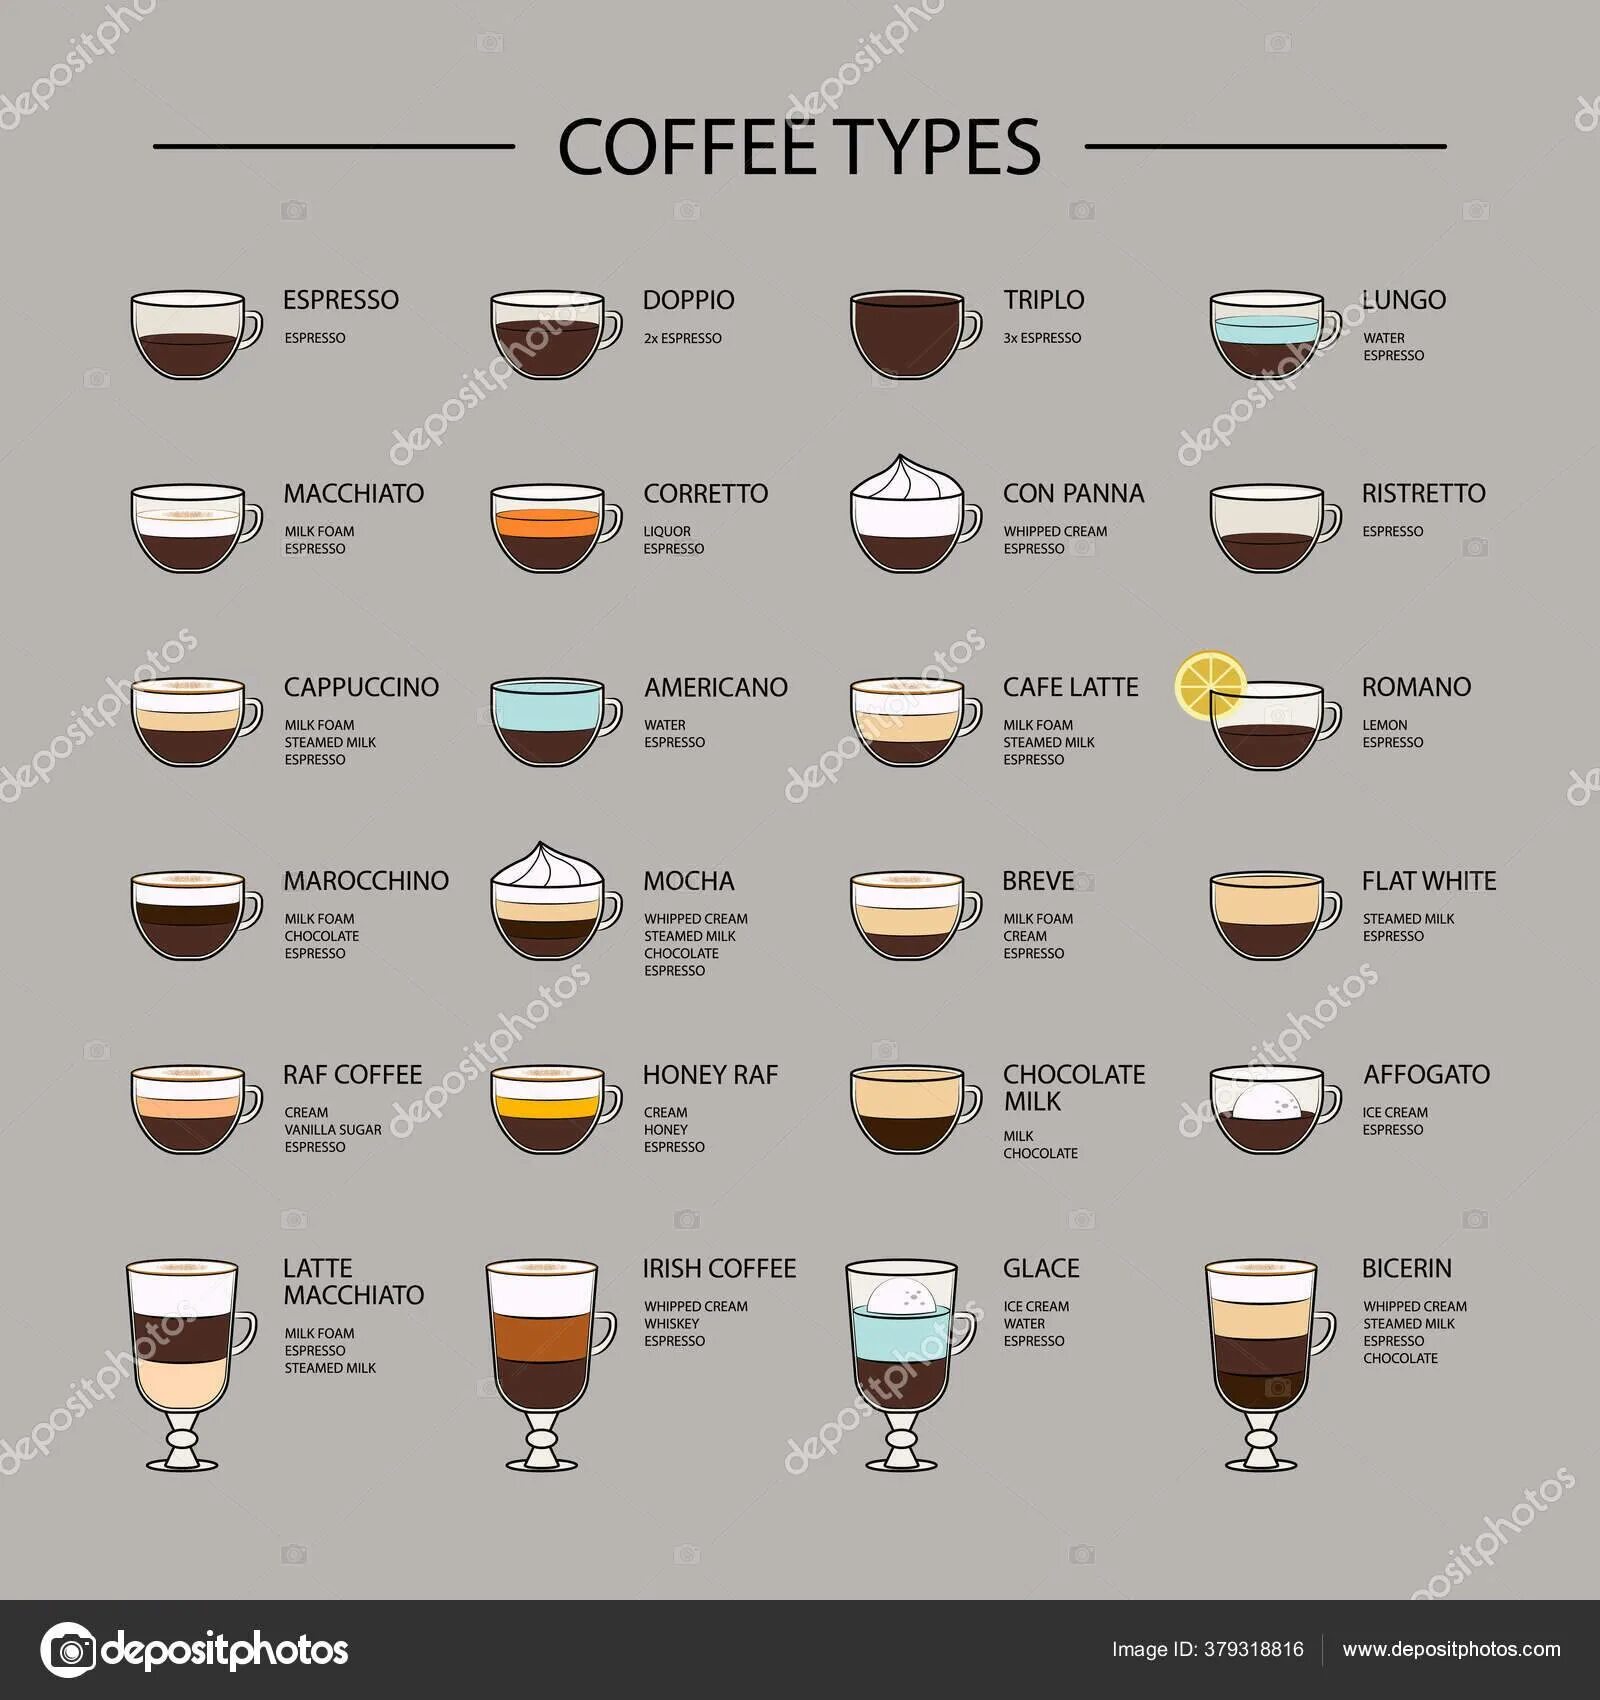 Холодный кофе состав. Виды кофе американо эспрессо капучино латте. Рецептура латте для кофемашины. Пропорции разных видов кофе. Пропорции приготовления латте макиато.